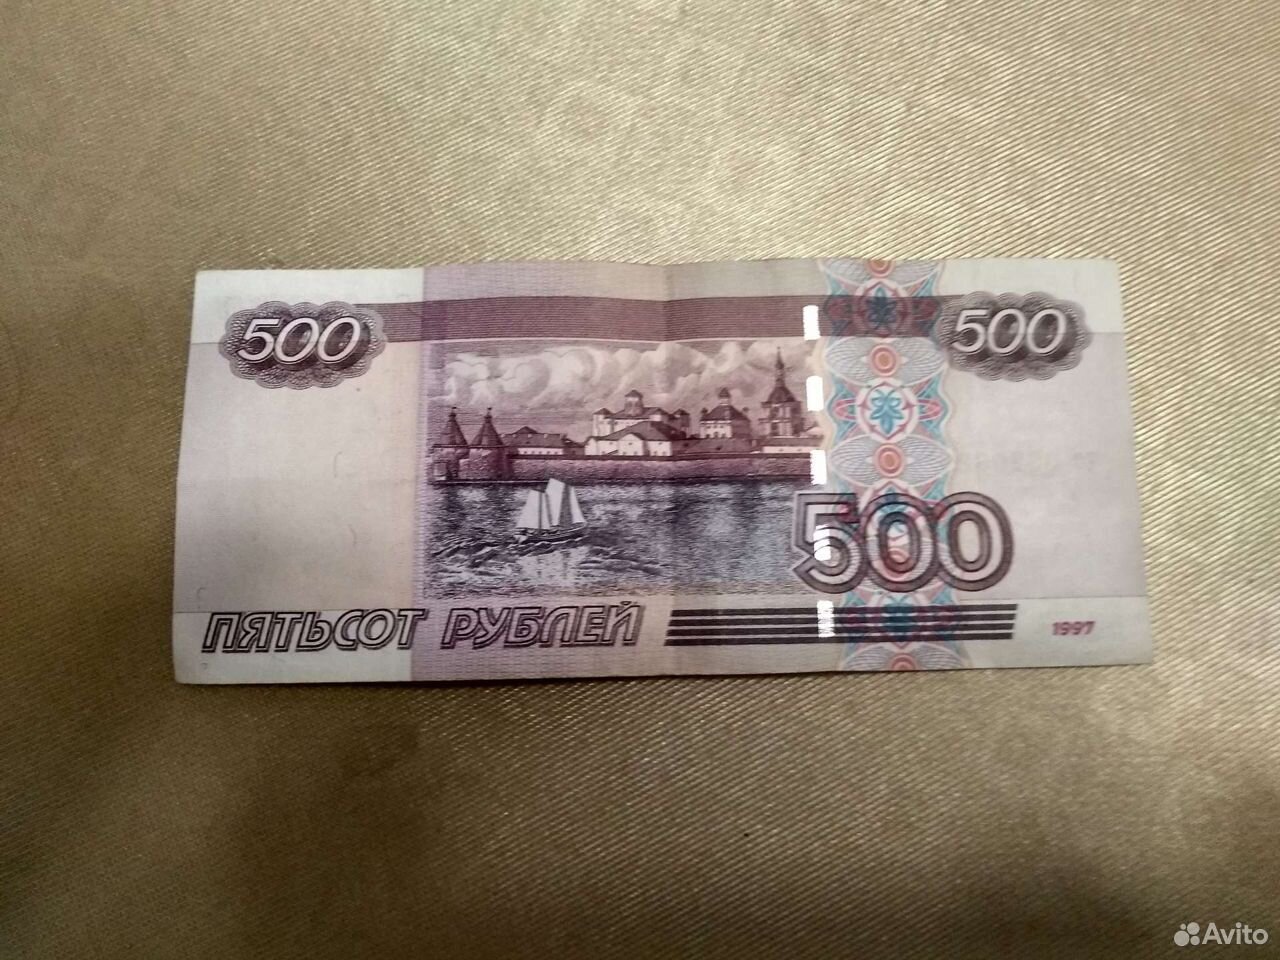 21 500 рублей. Купюра 500 рублей. 500 Рублей. Купюра 500 рублей 1997 года. Купюра 500 рублей 1997.